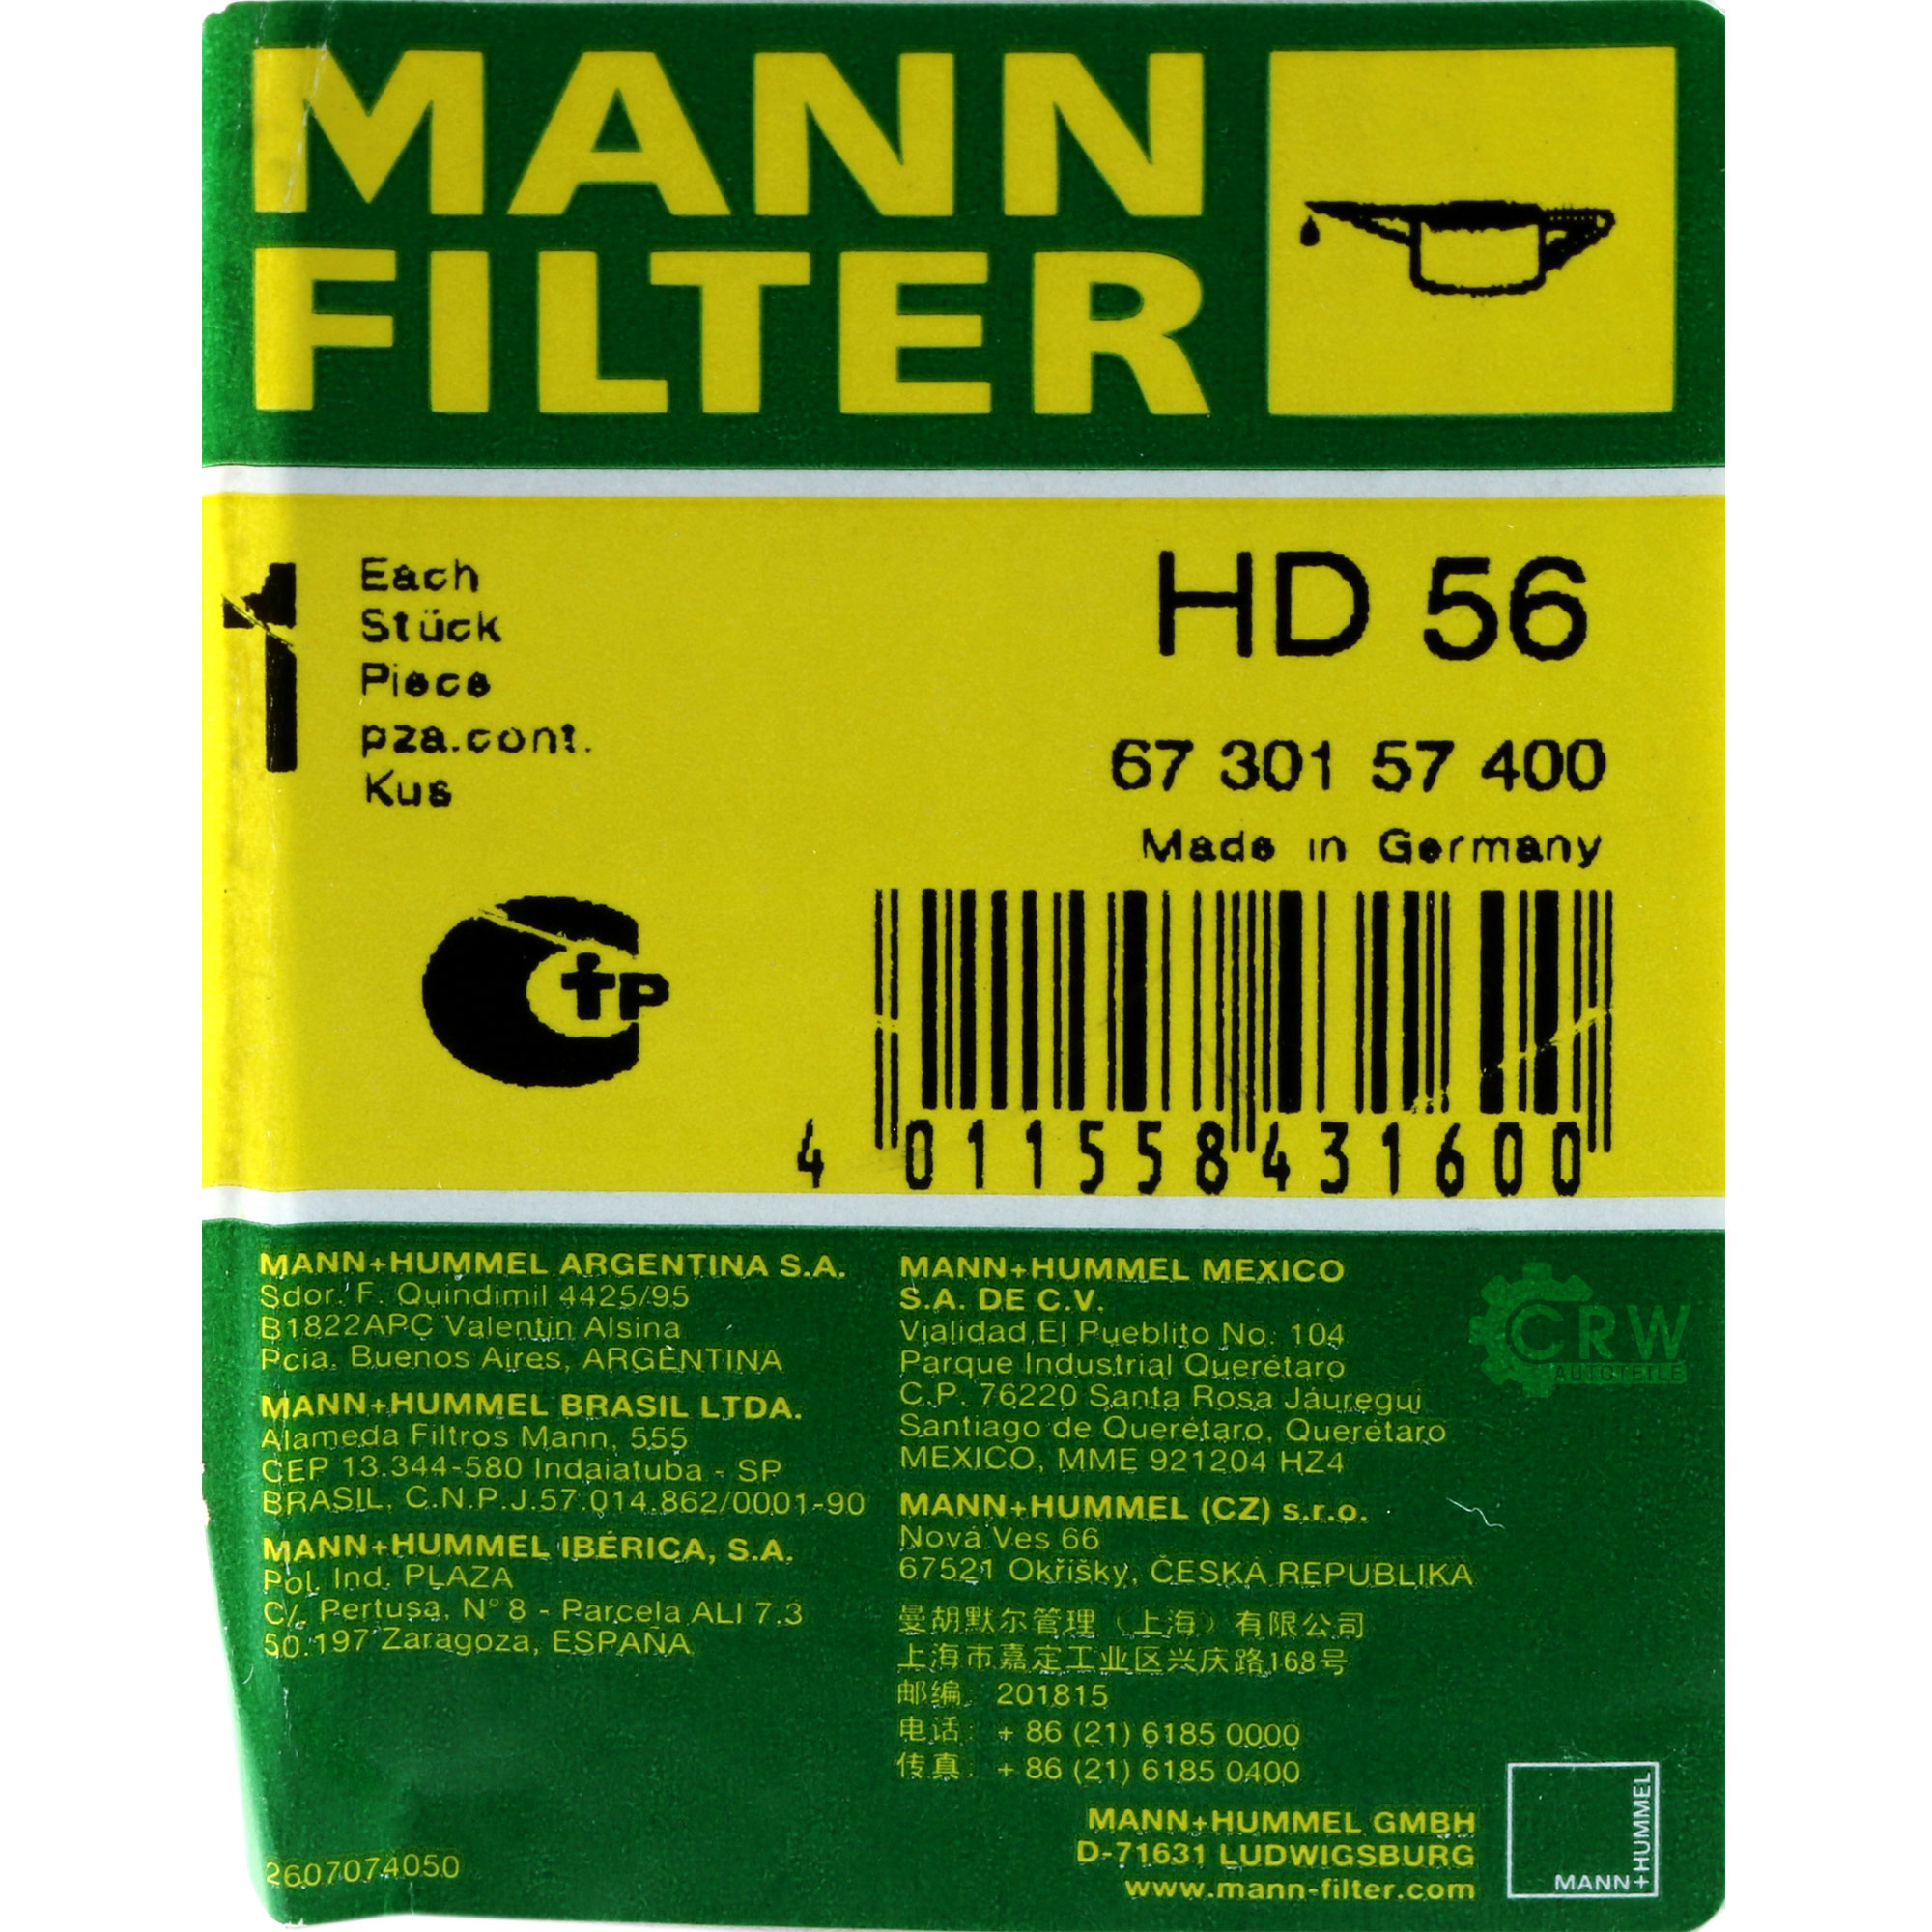 MANN-FILTER Filter für Arbeitshydraulik HD 56 Ölfilter Oil